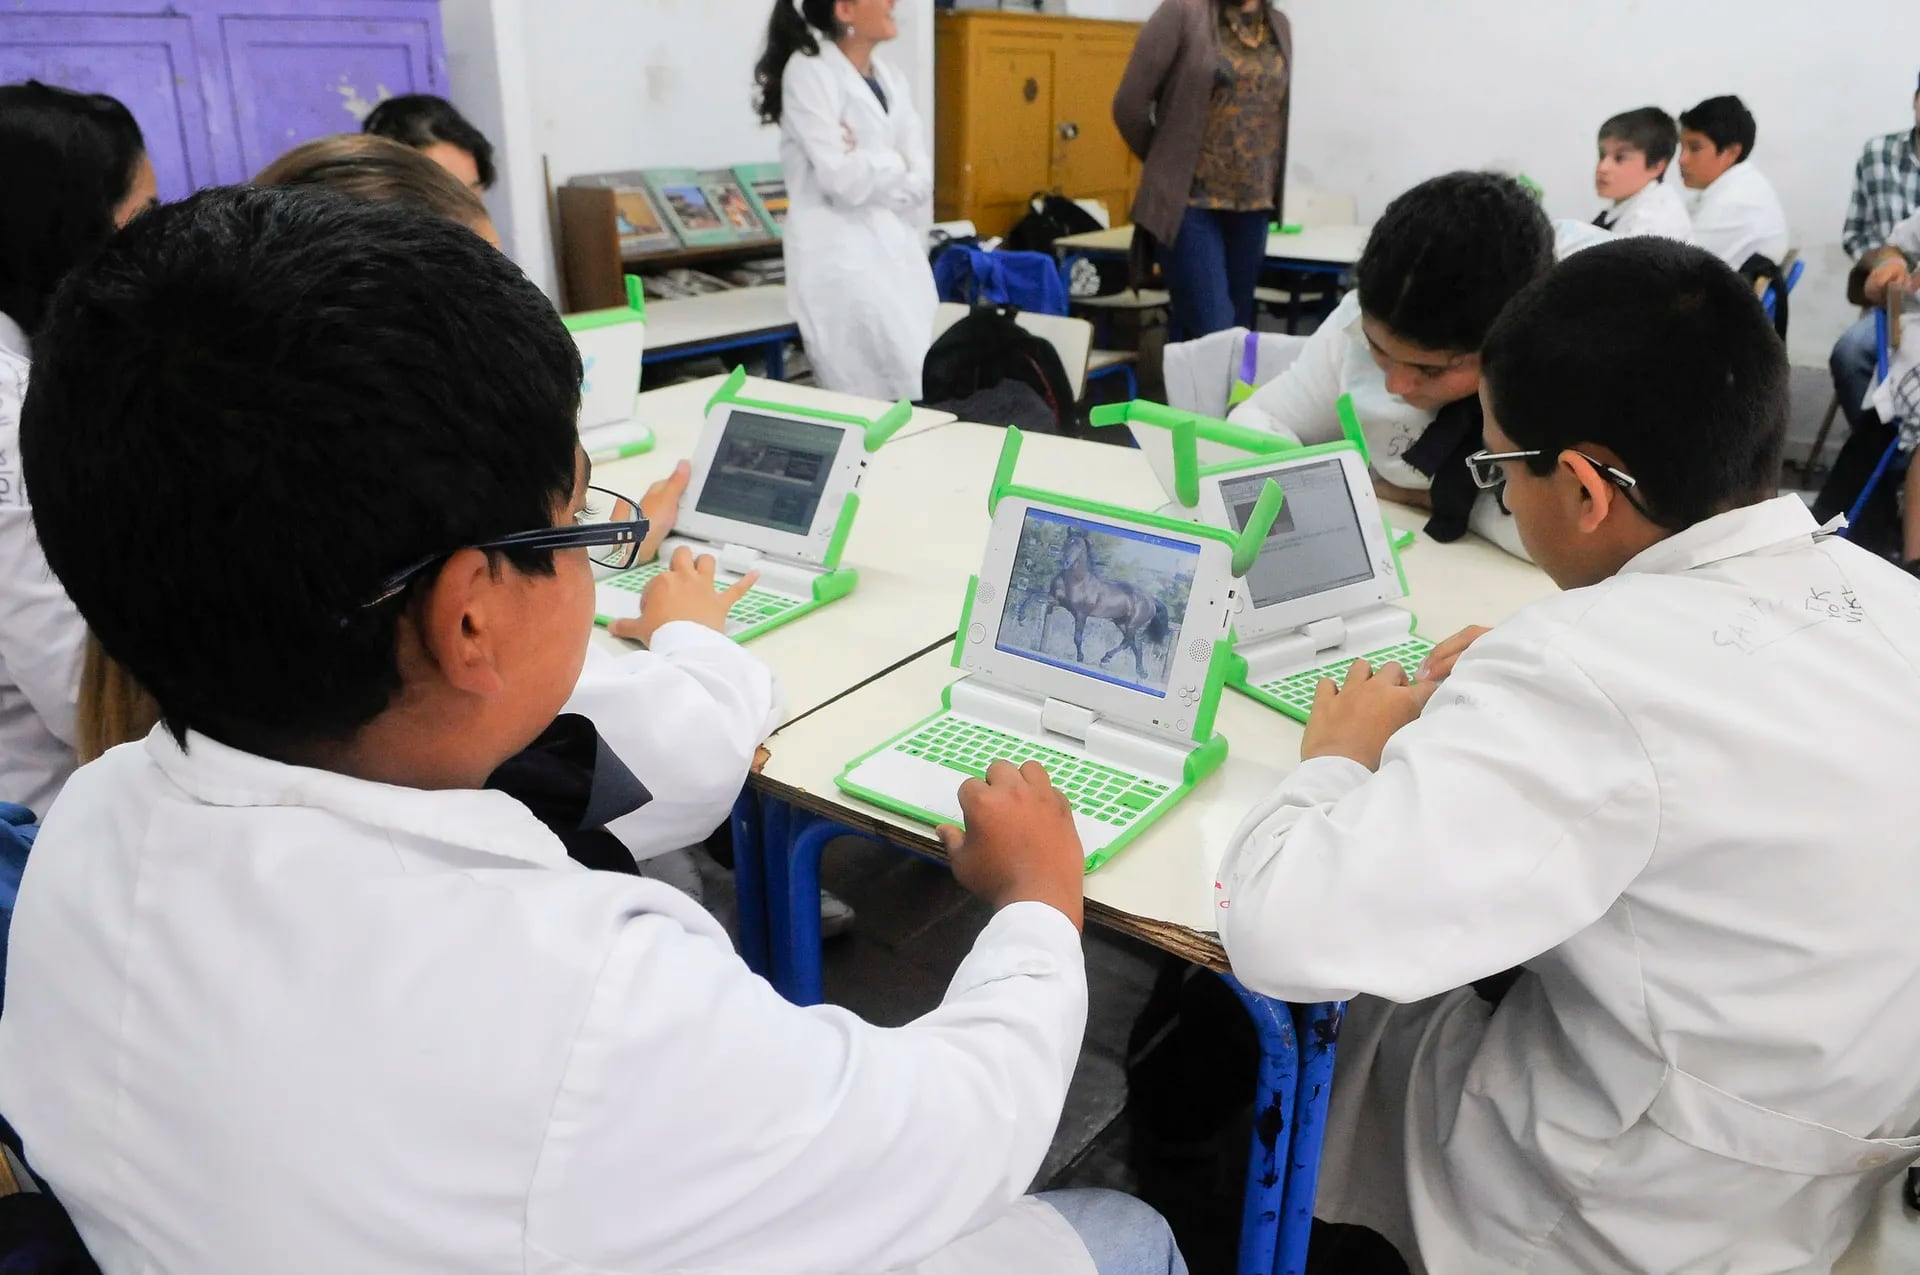 El BID destaca al programa Ceibal como un éxito a la hora de introducir la tecnología en las aulas de Uruguay